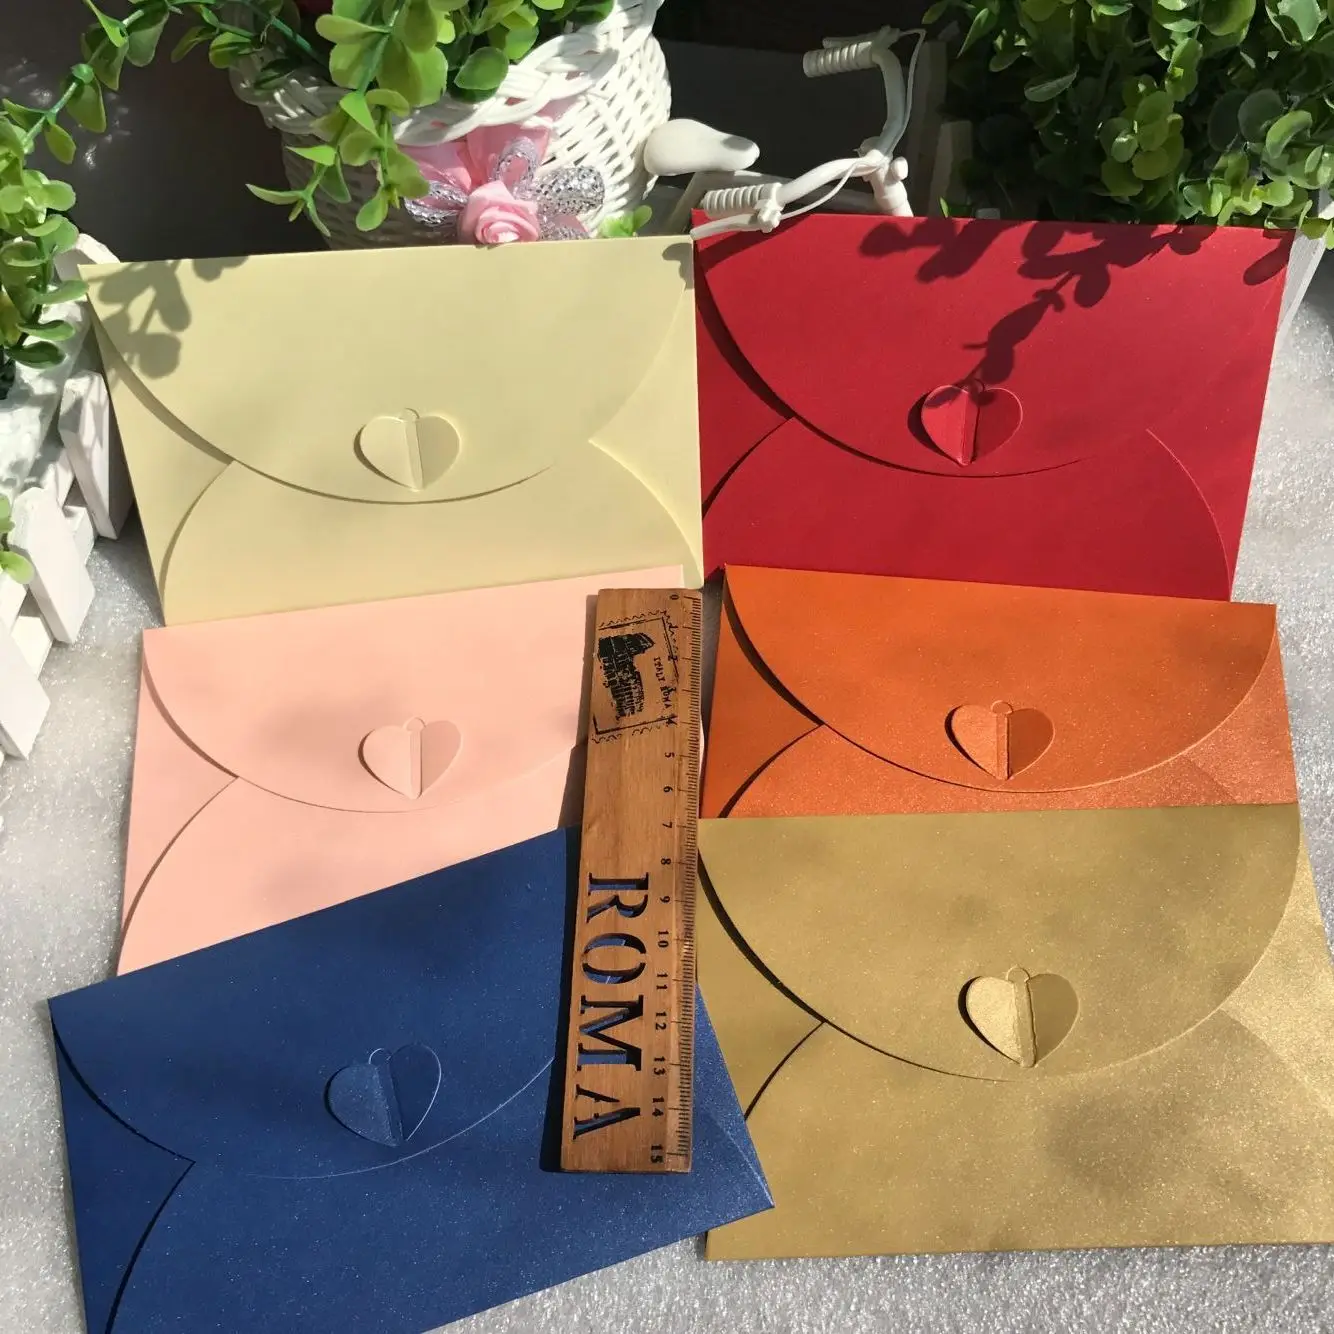 50 шт. 17,5*11 см винтажные маленькие цветные пустые бумажные конверты в стиле ретро, конверты для свадебных торжеств, приглашений, поздравитель... от AliExpress WW